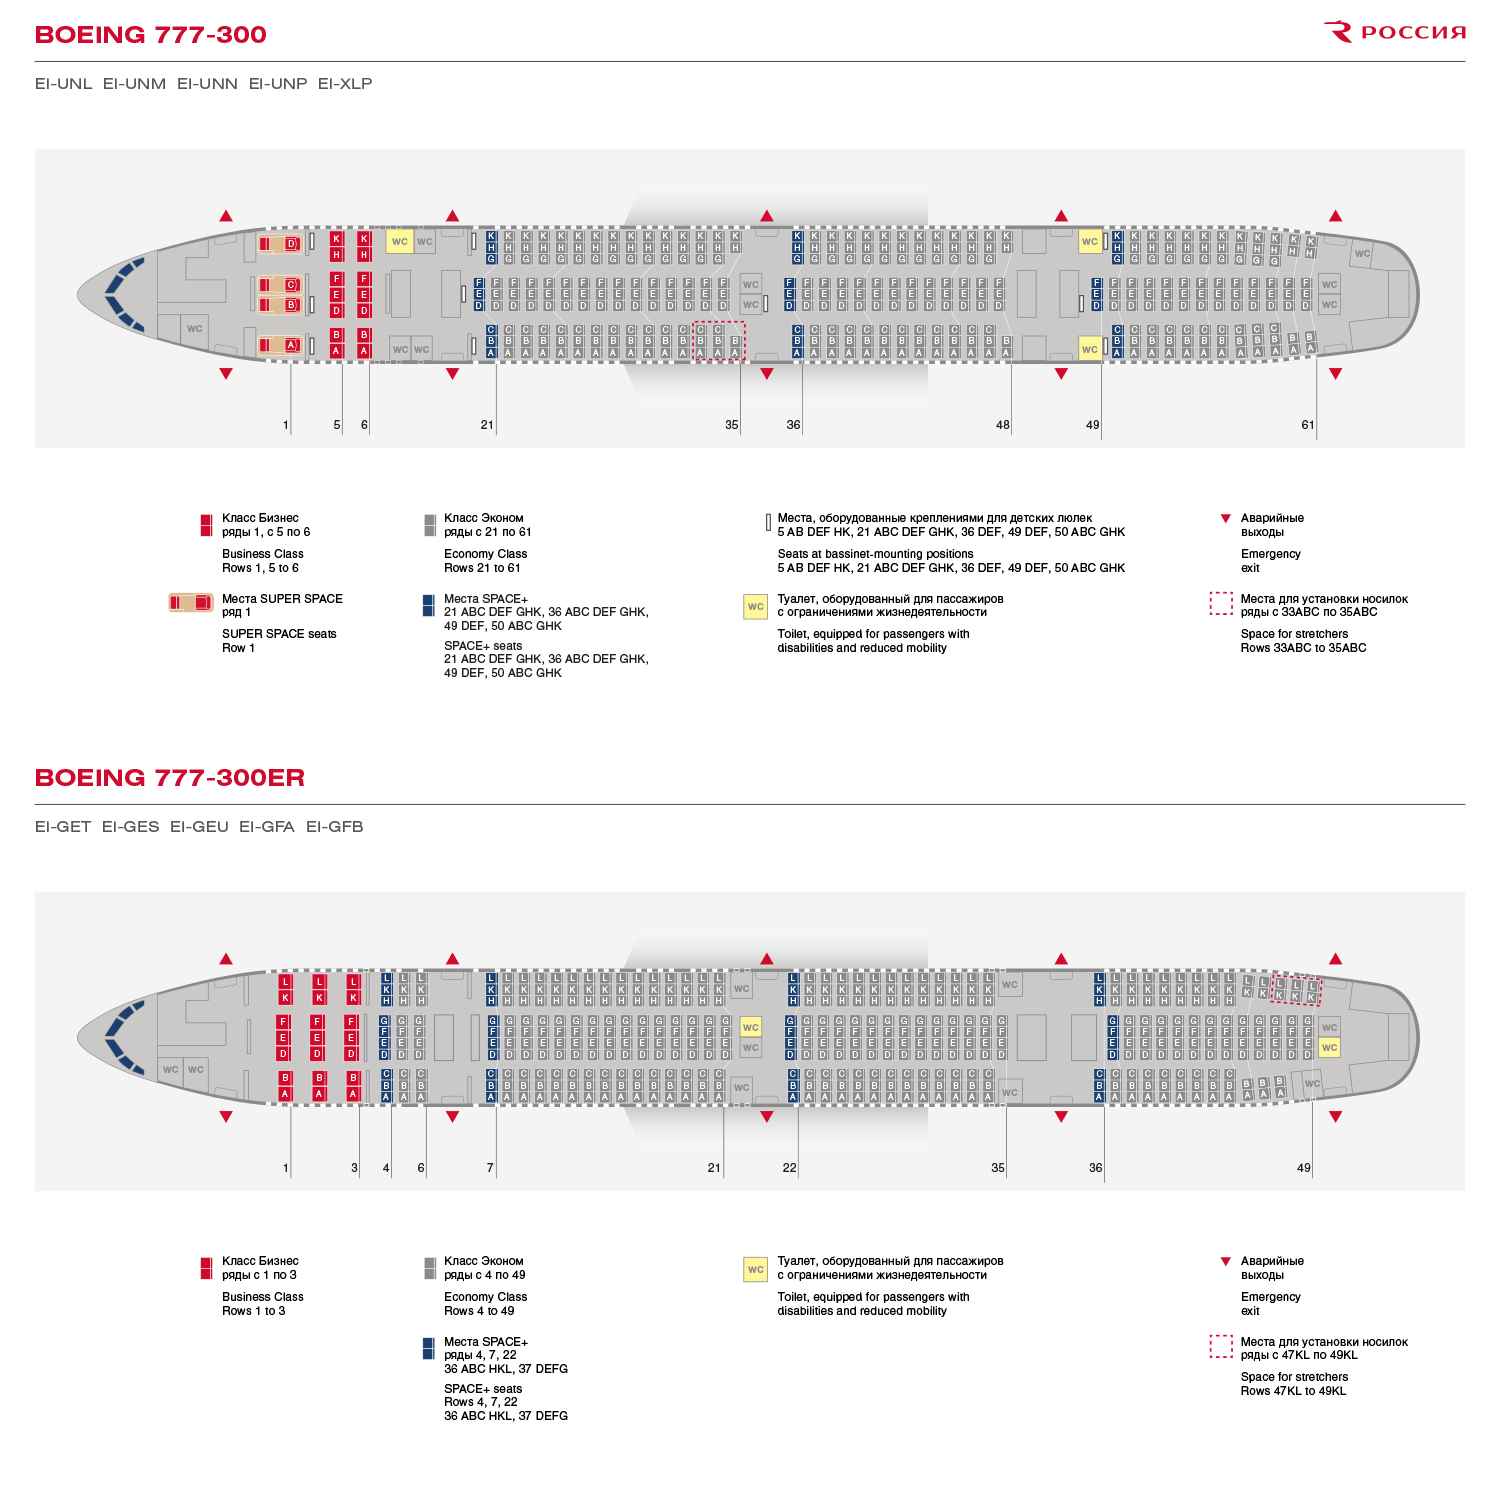 Обзор boeing 747 а/к россия — фото, видео, схема салона, питание, система развлечений